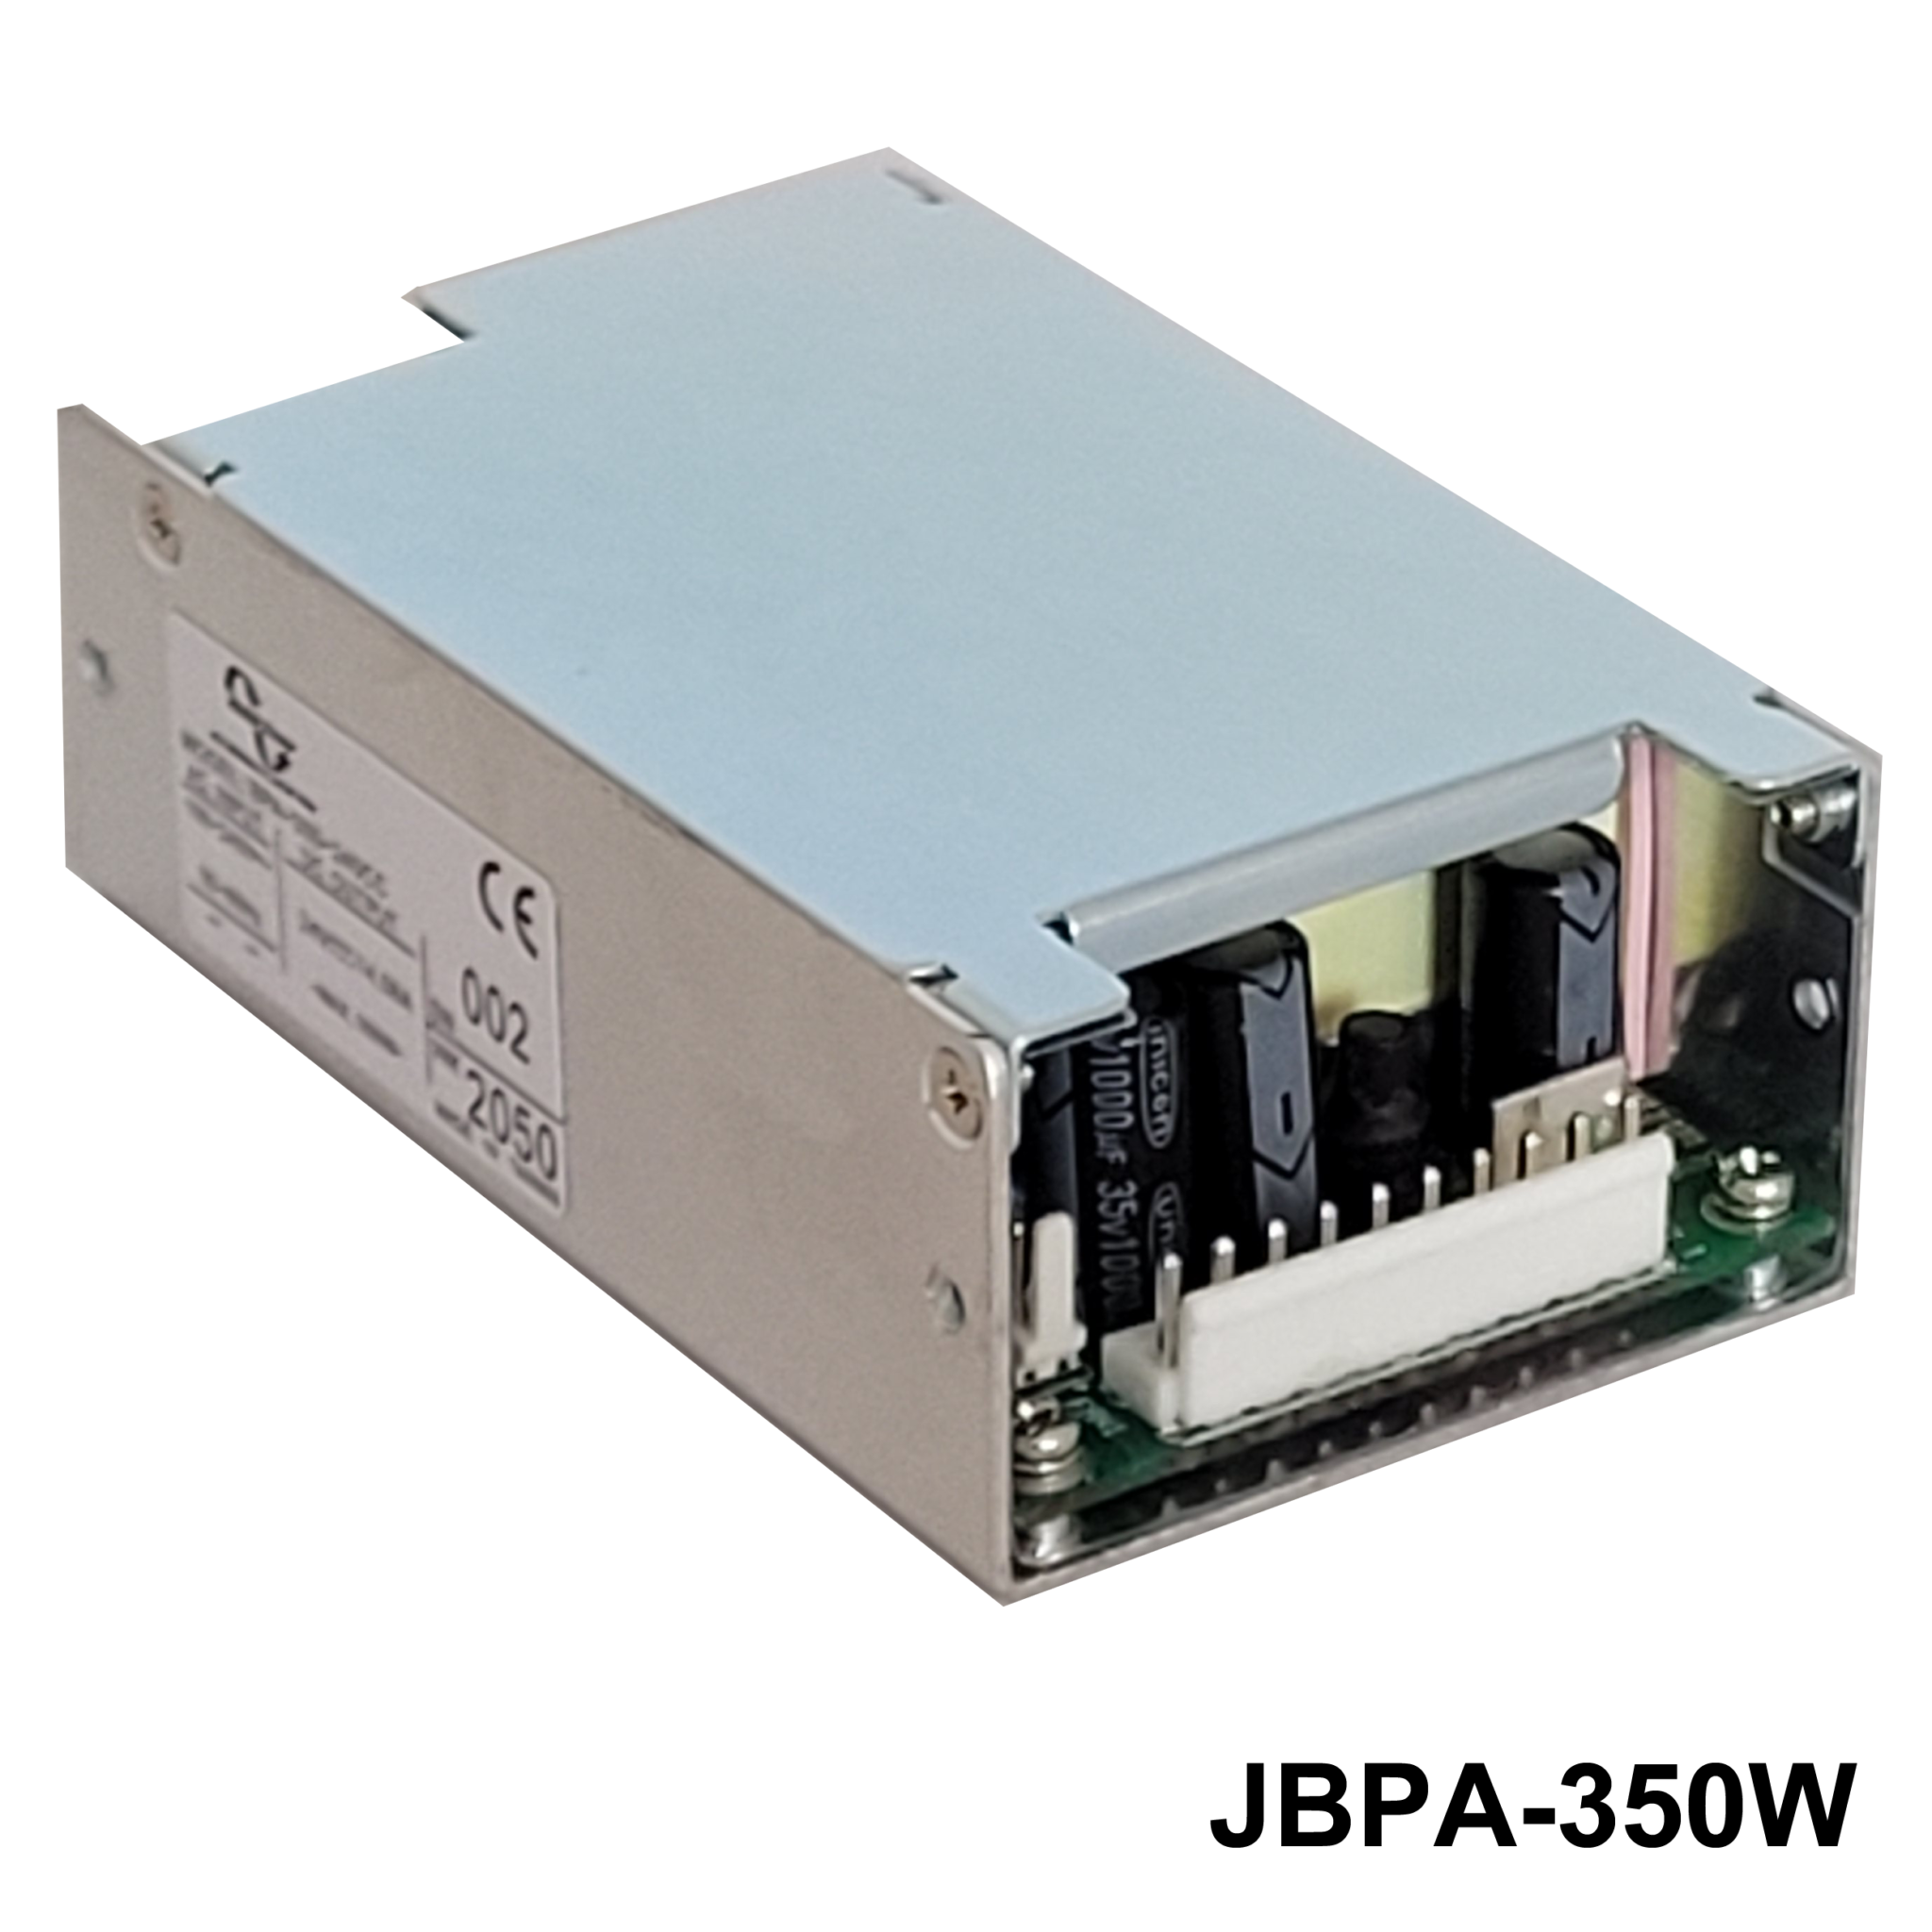 JBPA-350WSeries4